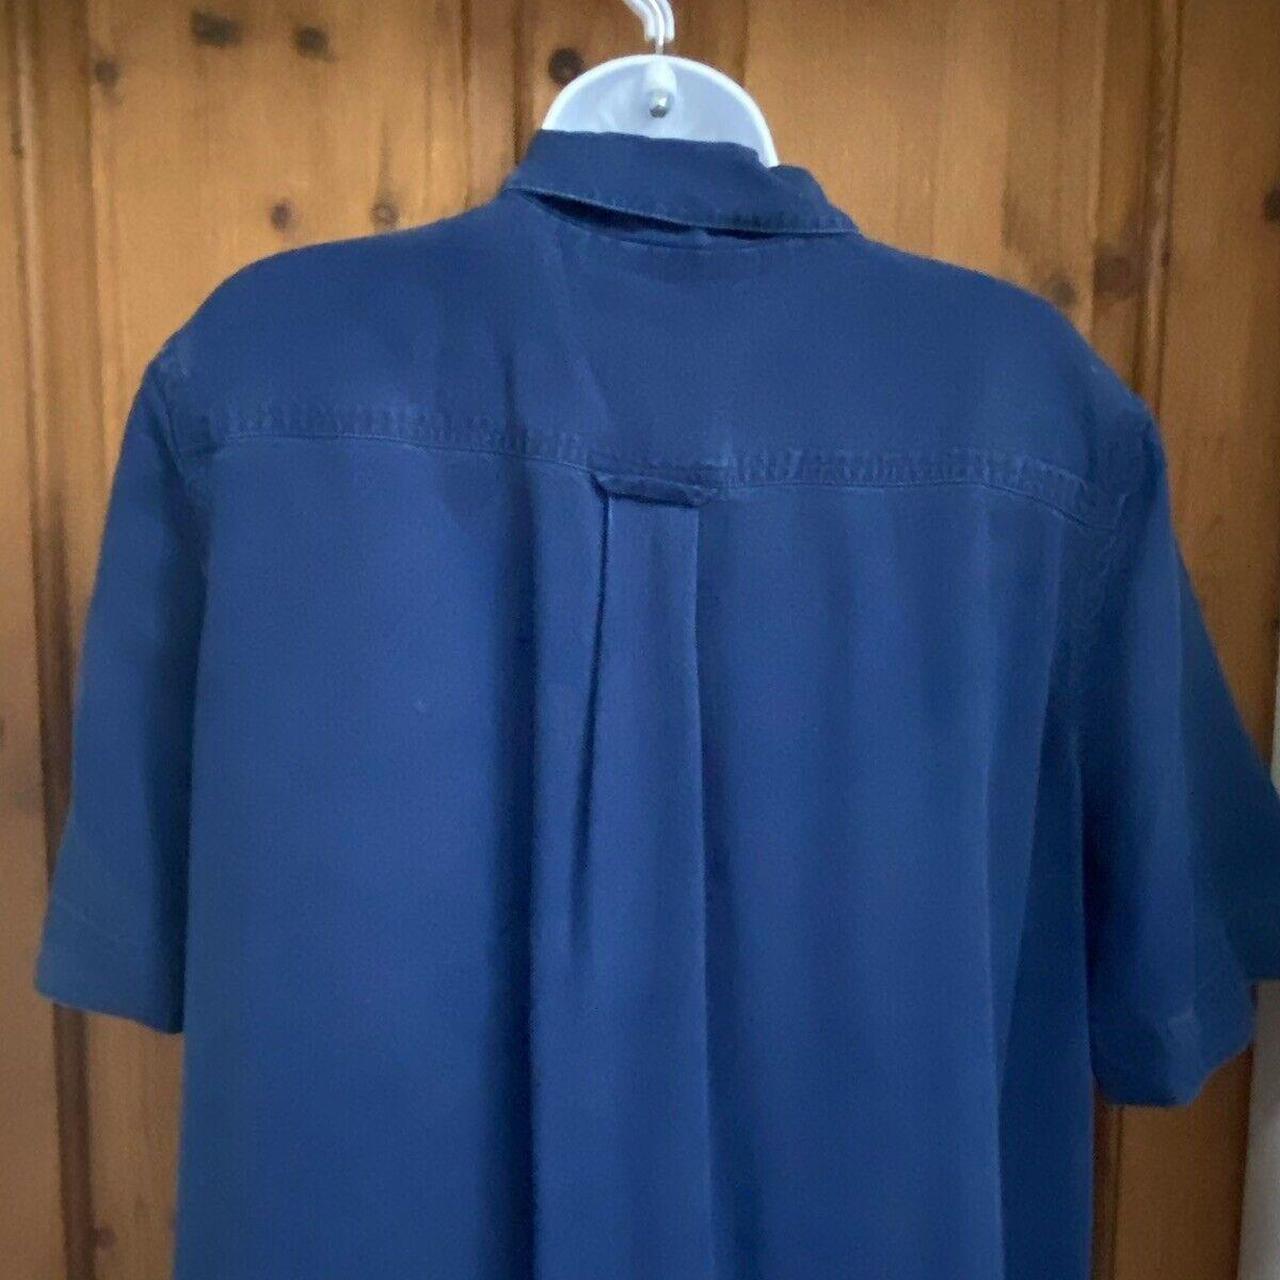 Vintage JAEGER Dress Collared Navy Blue Shirt 1980's... - Depop